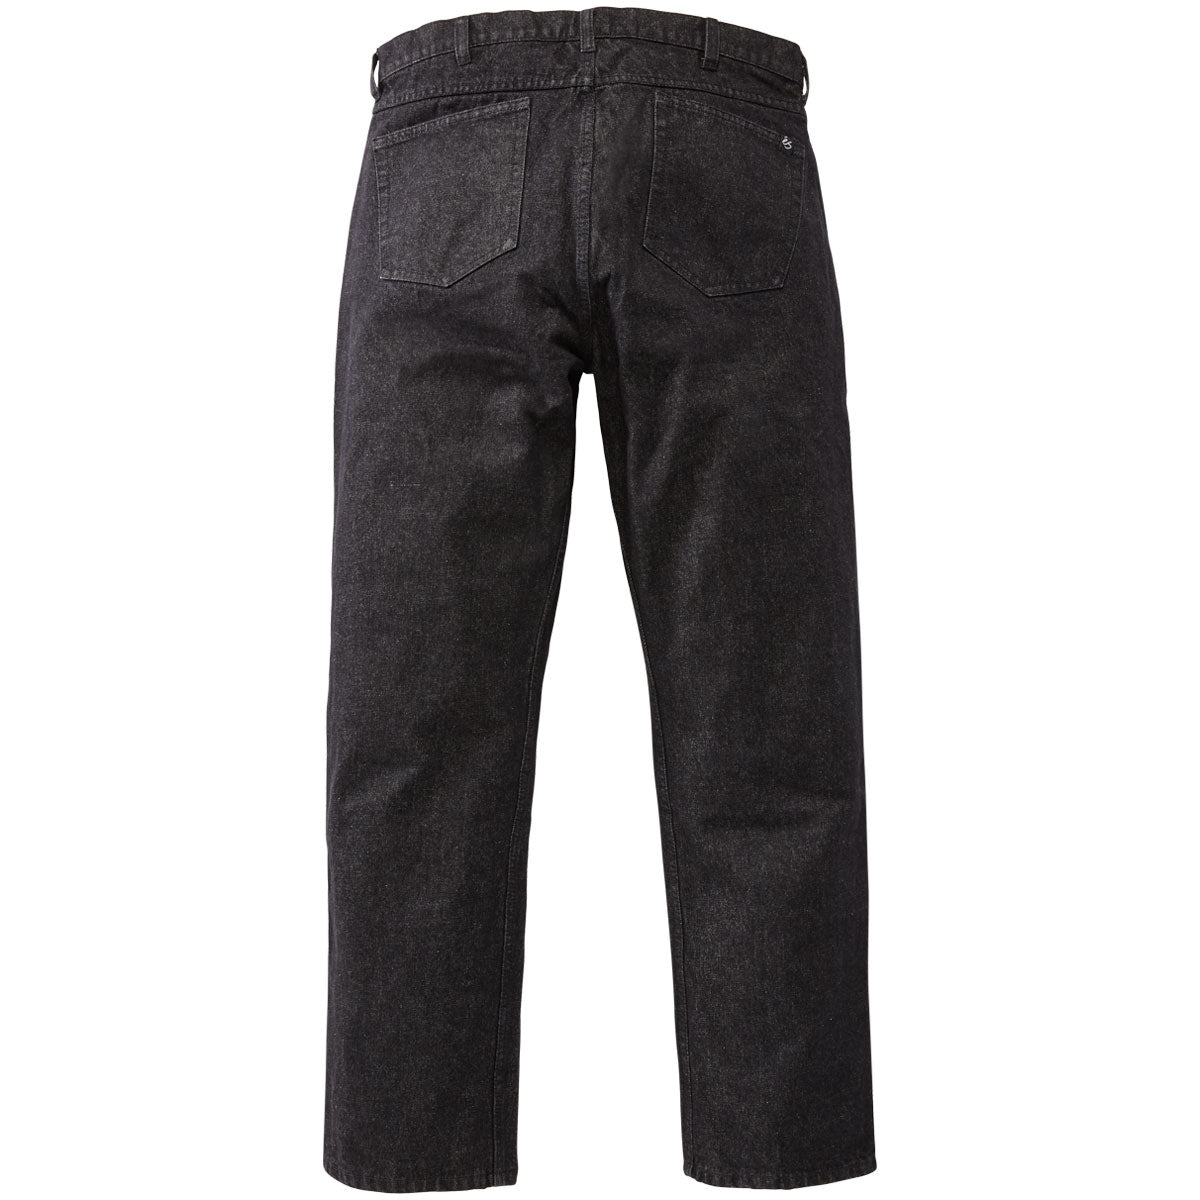 eS Baggy Denim Jeans - Black Wash image 2